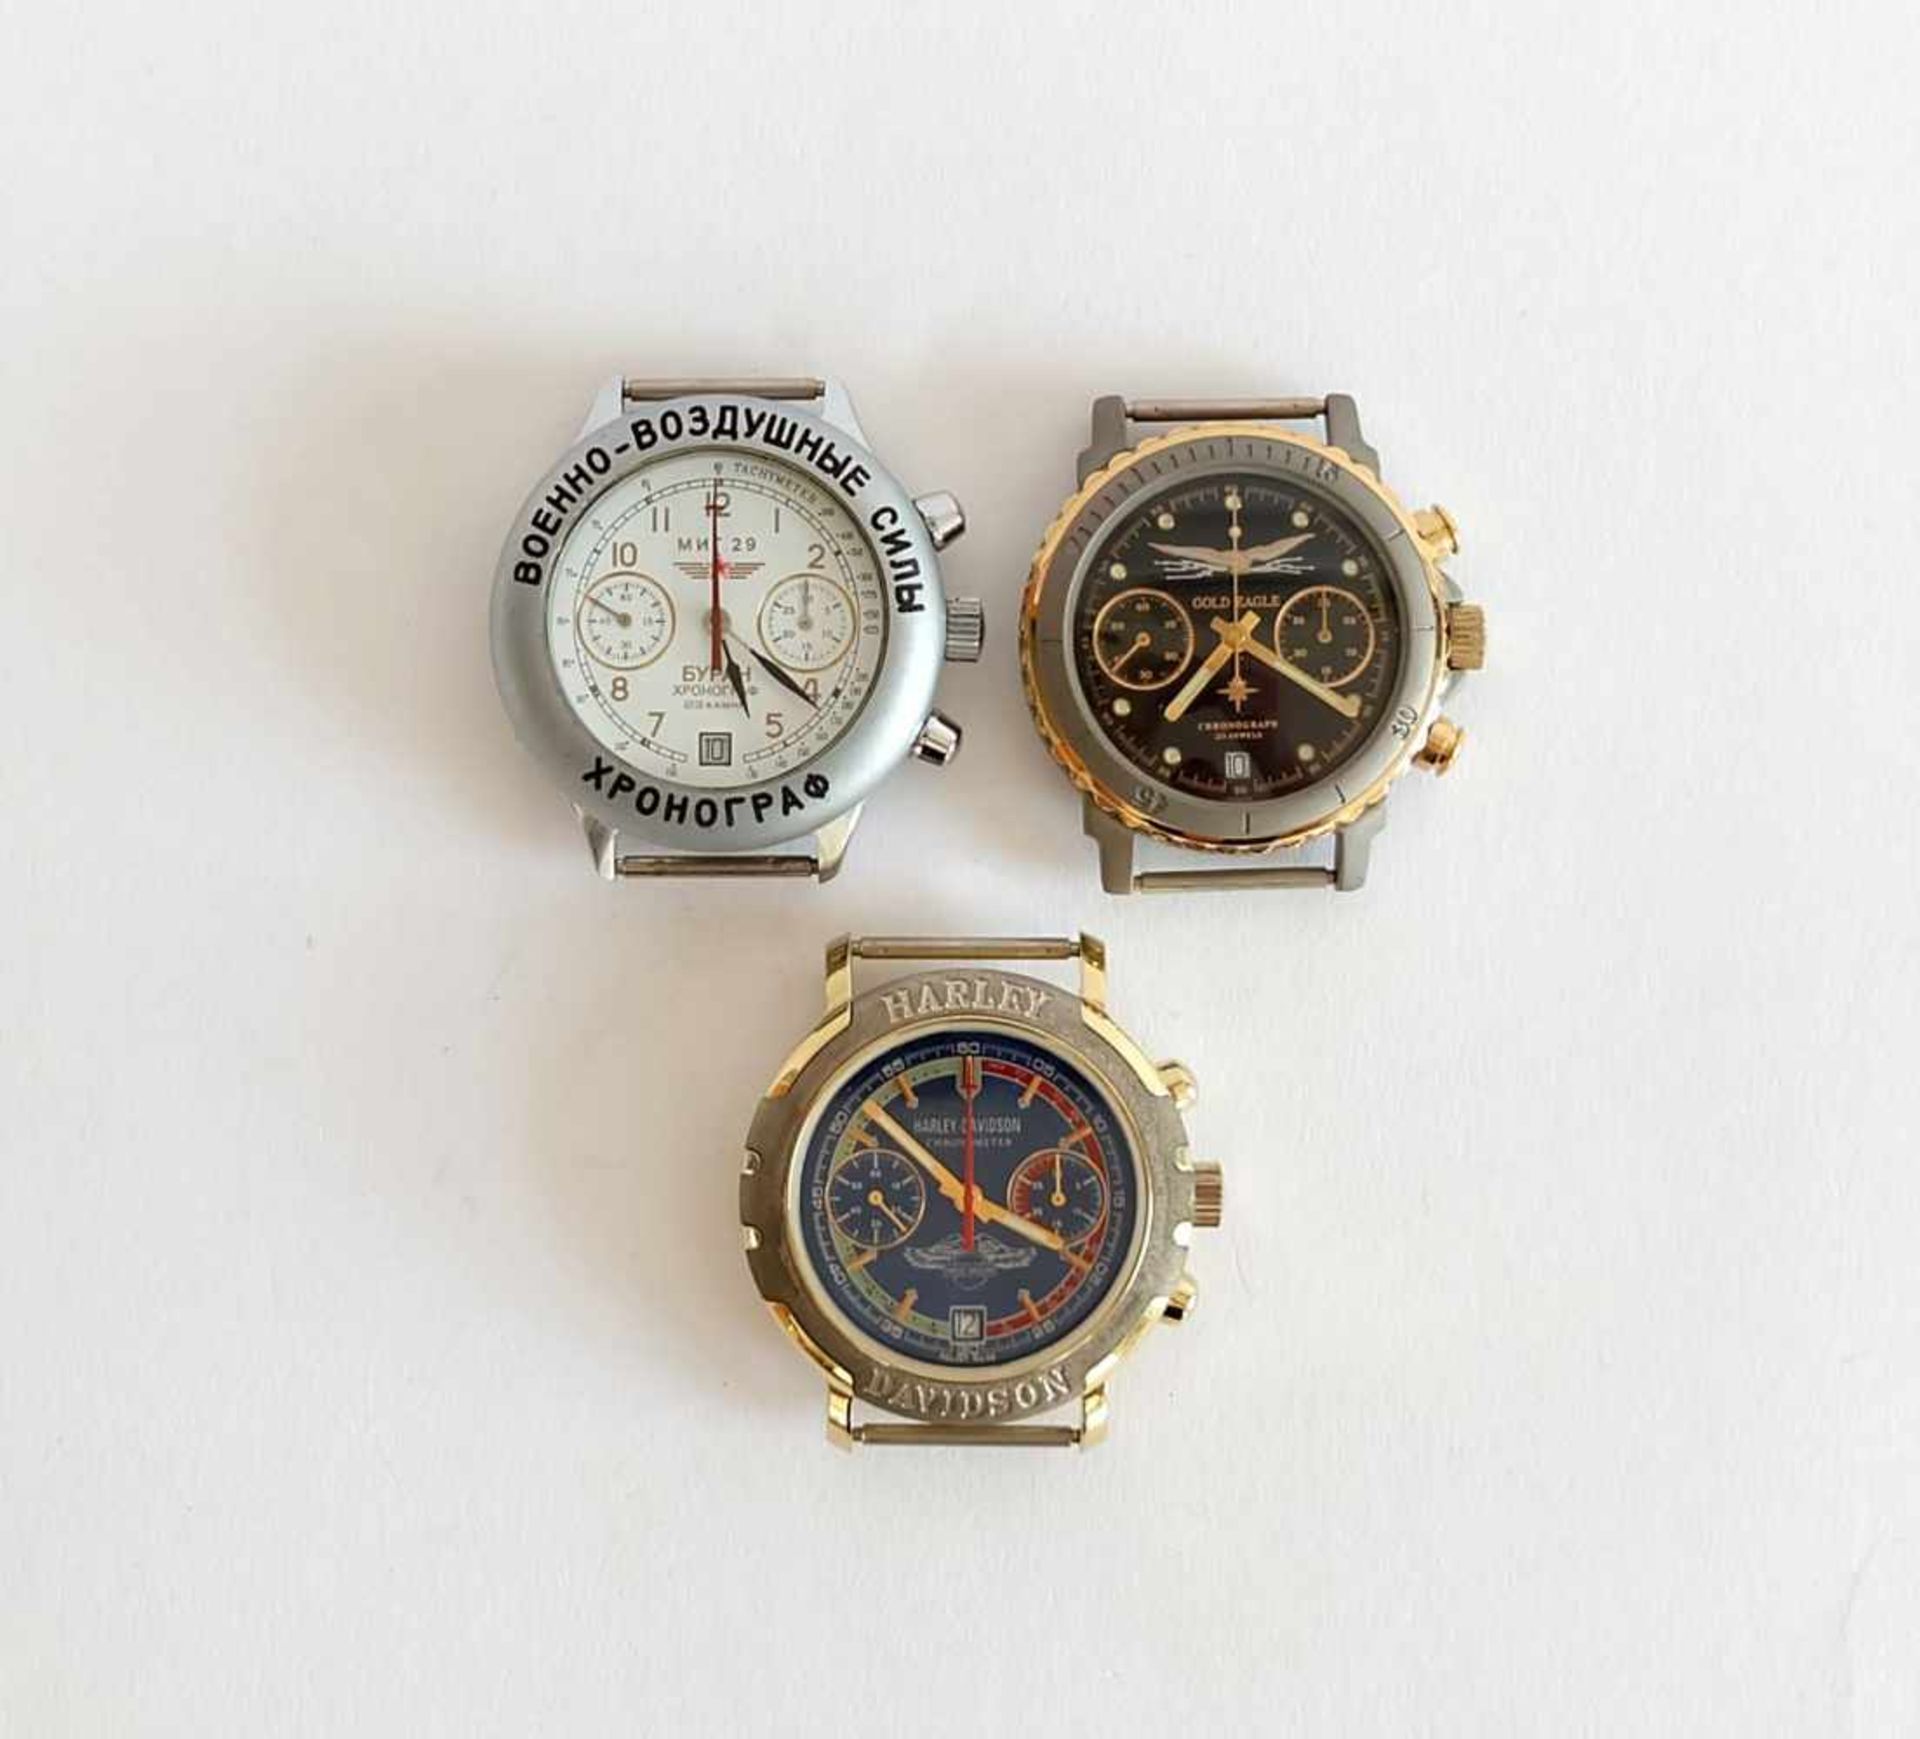 HAU, Konvolut von 3, Herst. Erste Moskauer Uhrenfabrik, Marke Poljot, Chronograph, 23 Steine, 2x